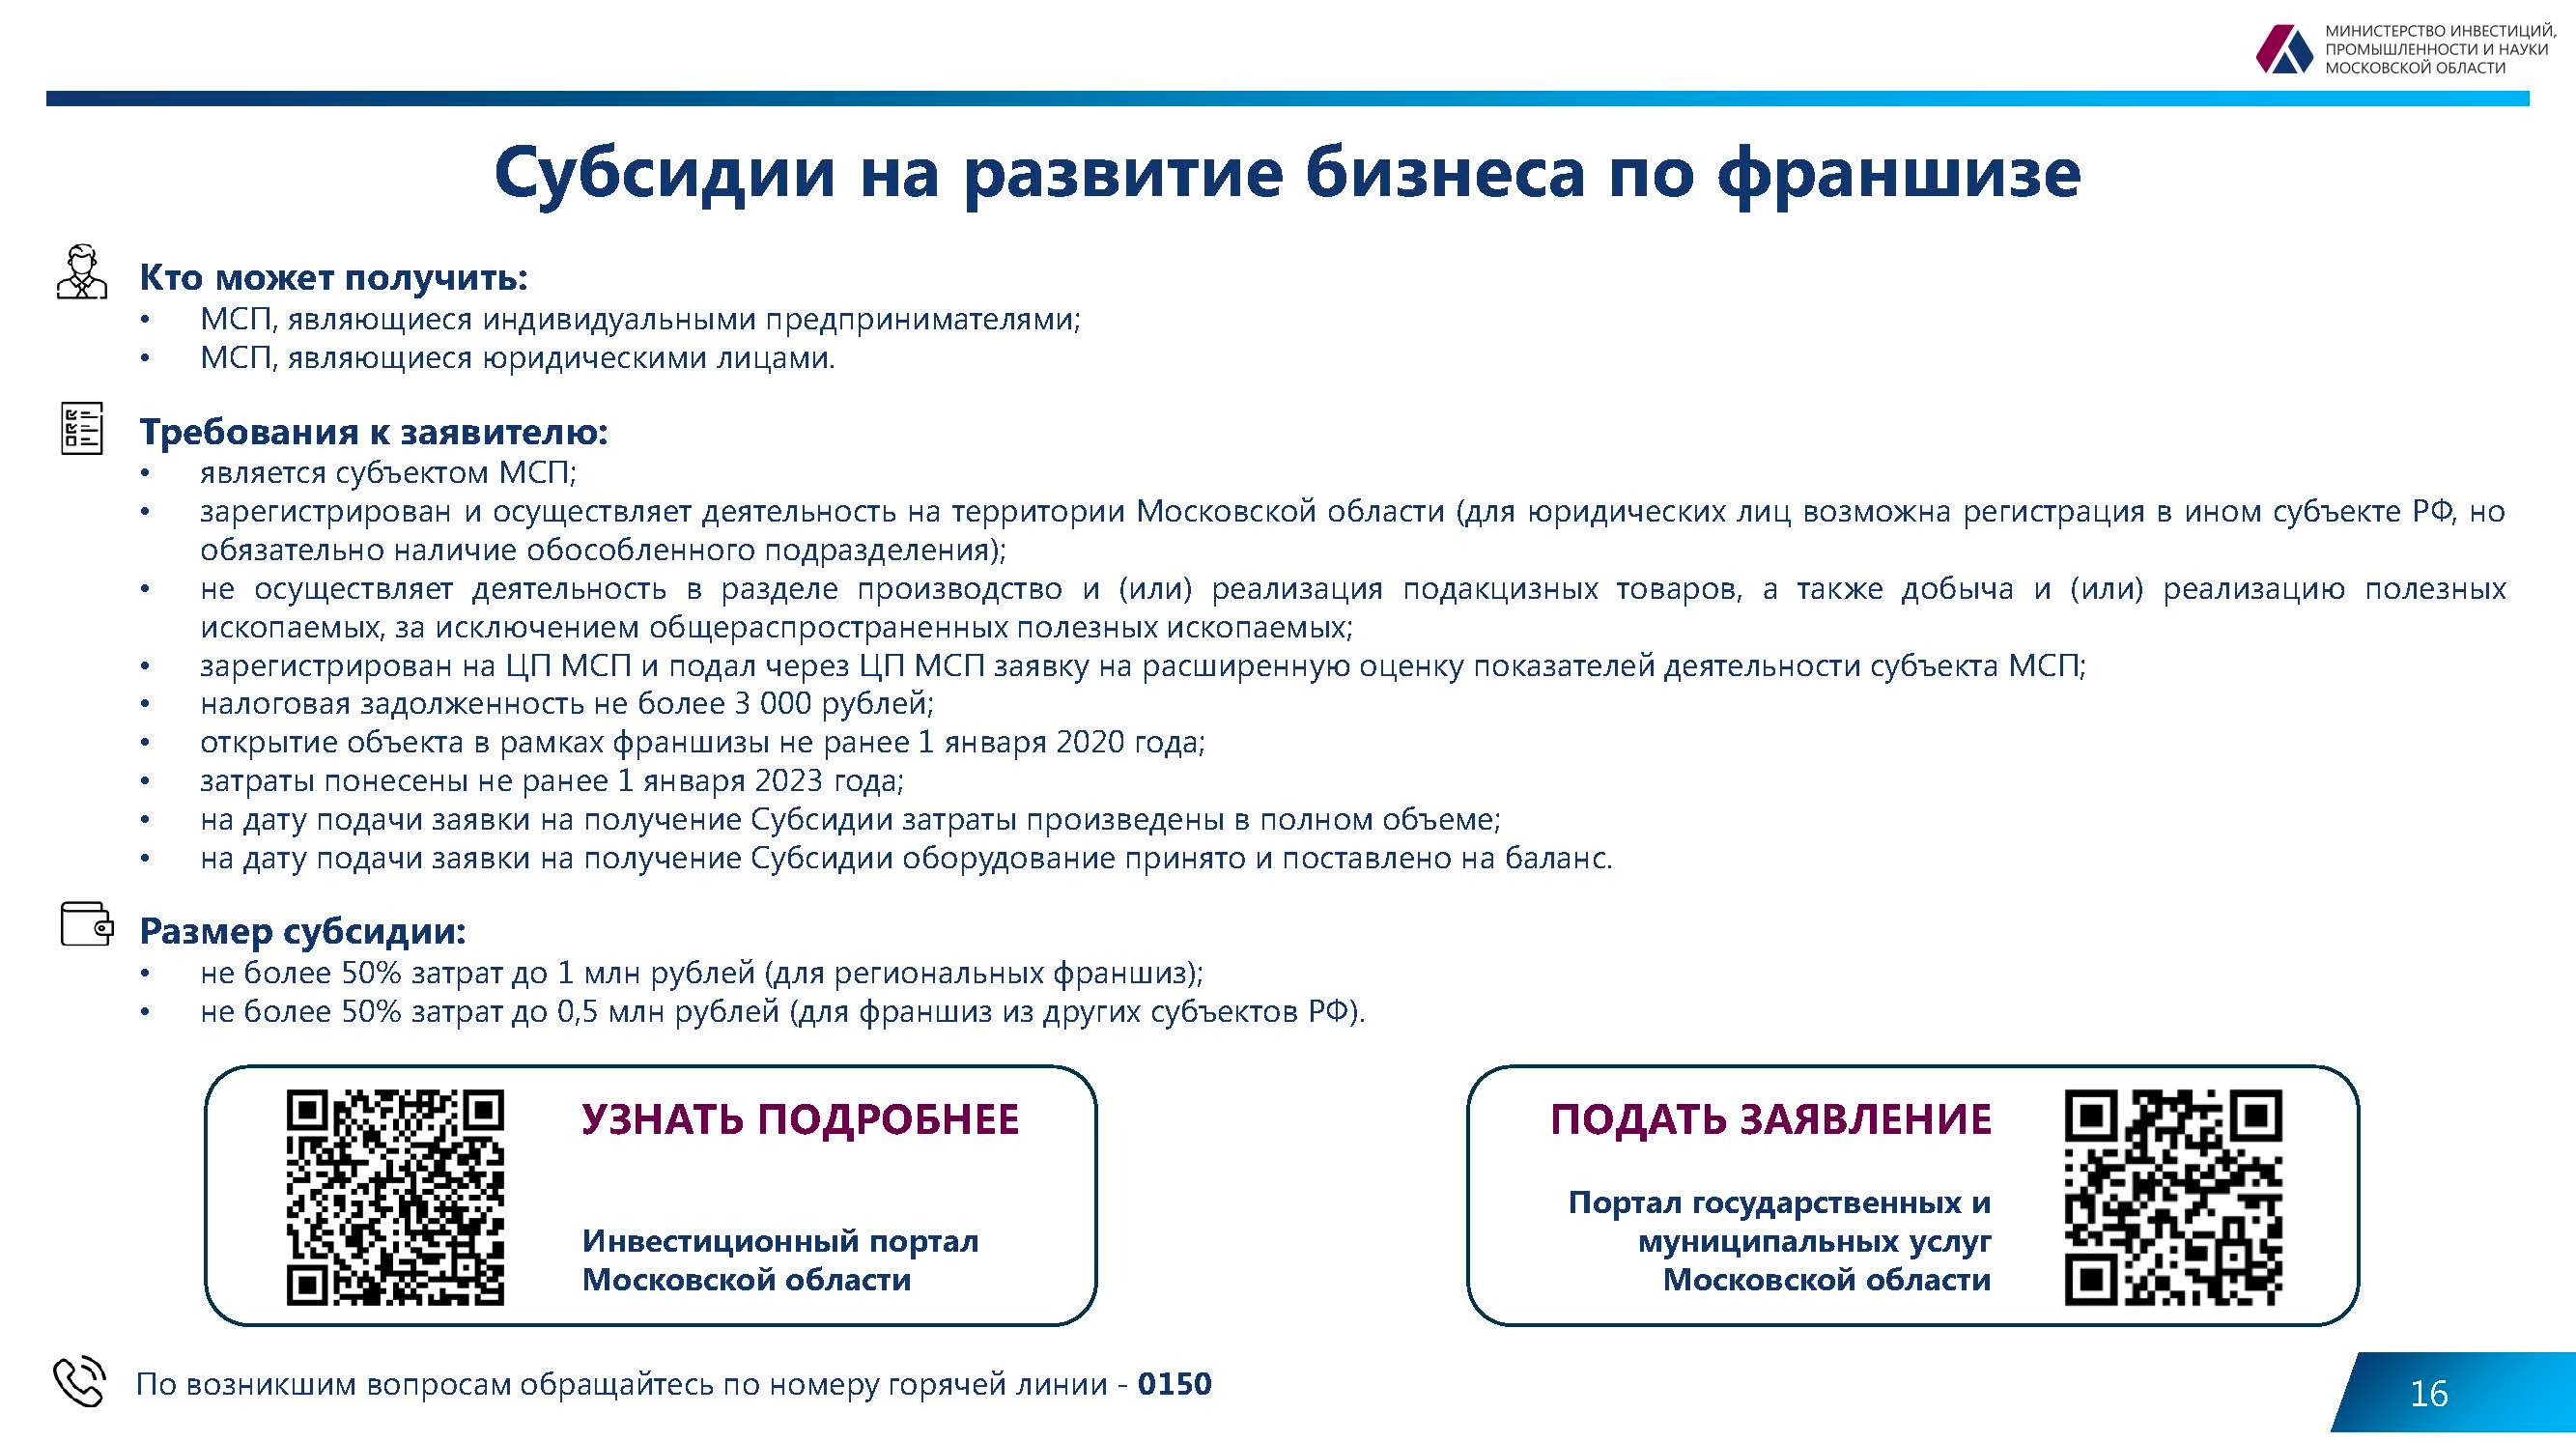 Действующие меры поддержки бизнеса на территории Московской области